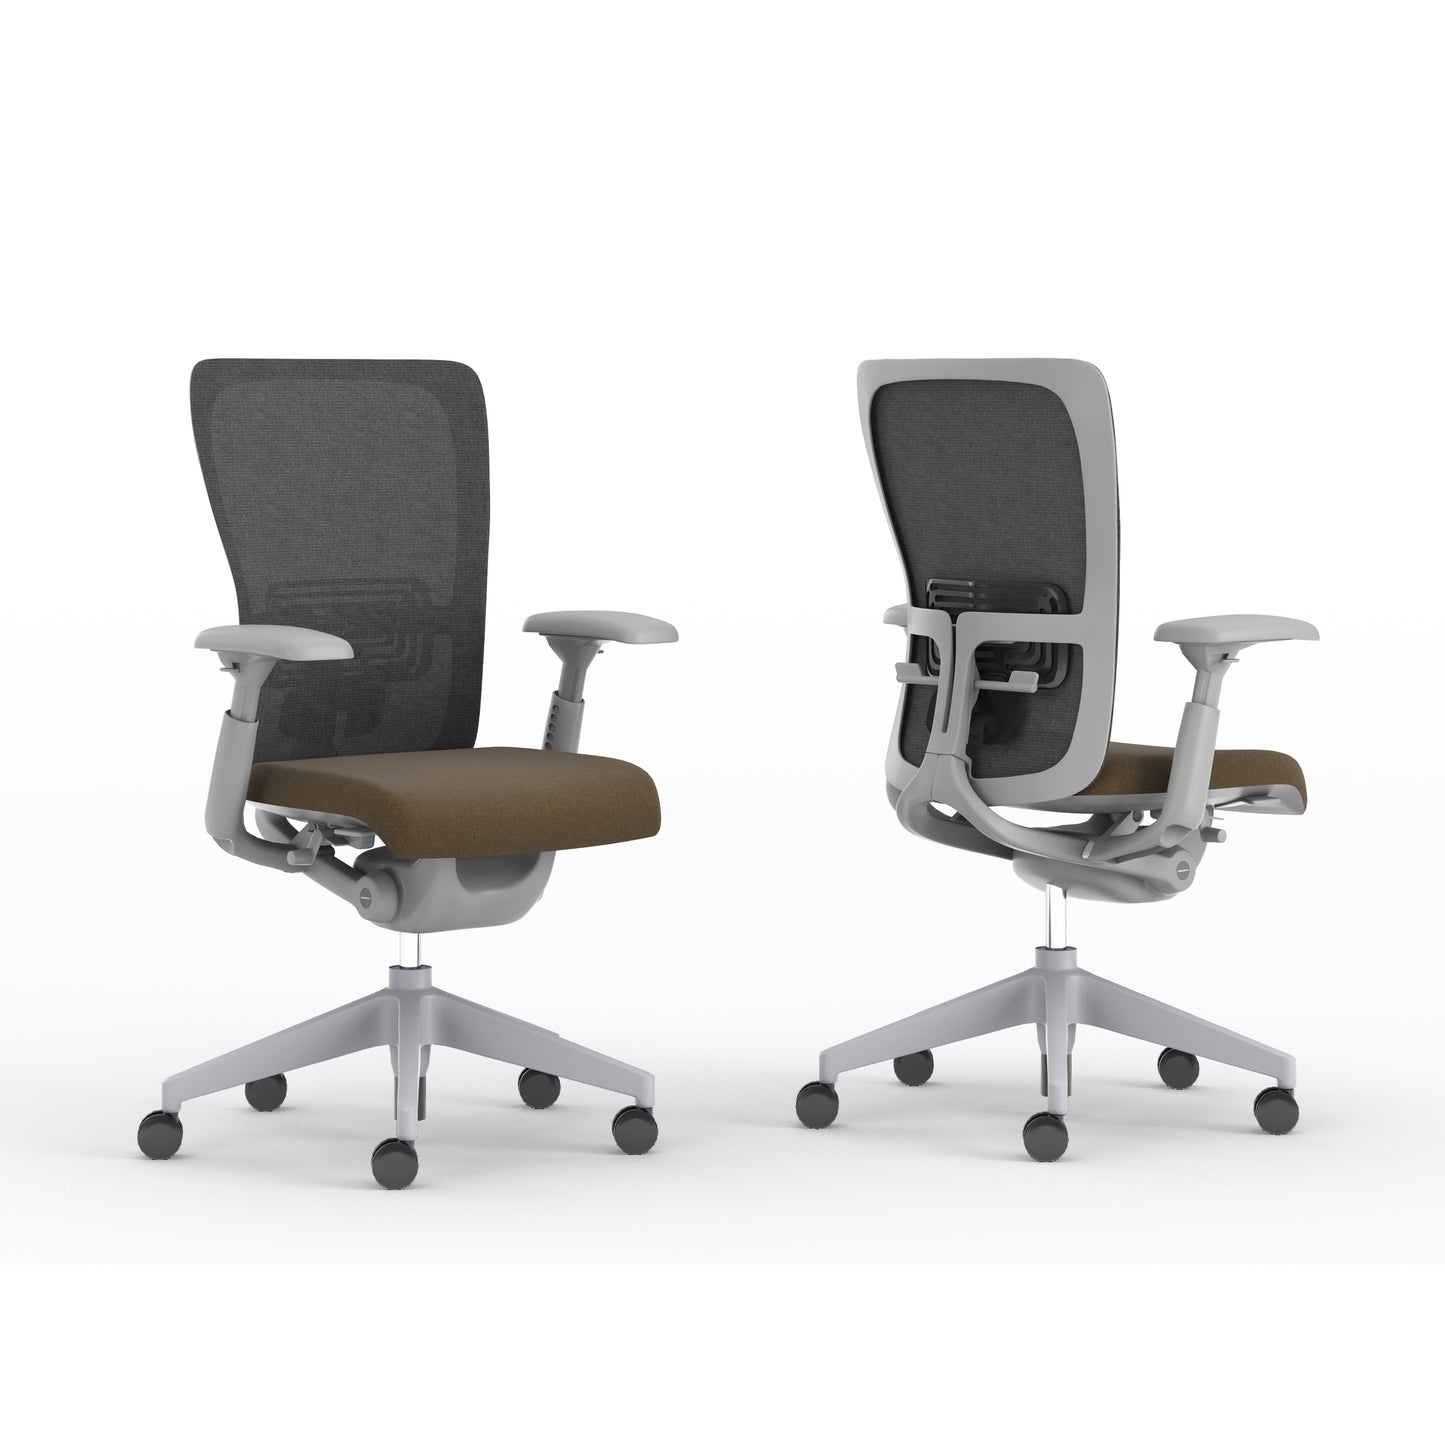 Haworth Zody Task Office Chair Comfort/Jodhpurs SESZTPM7-MA002/3A023